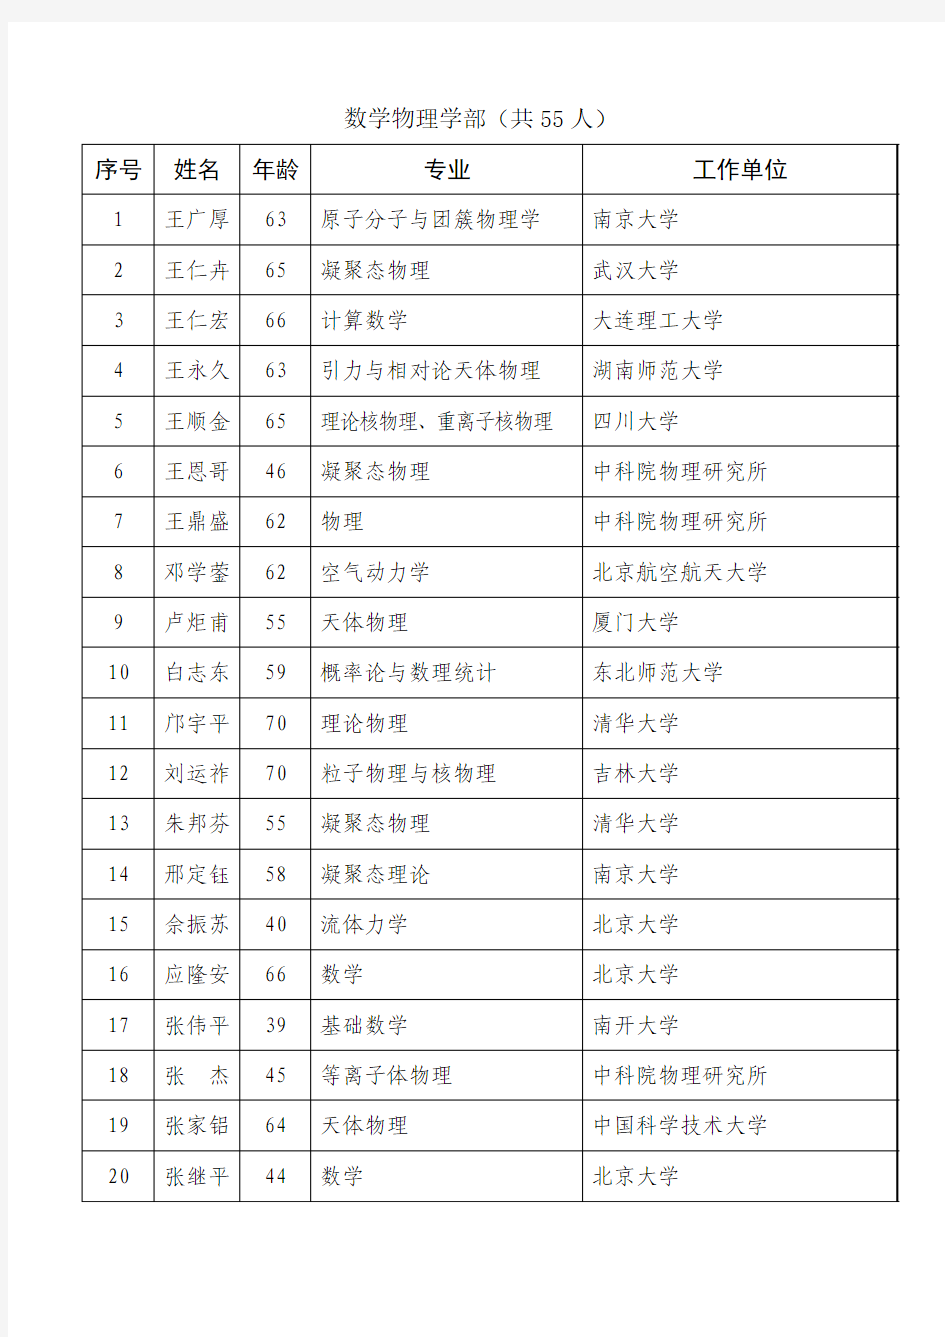 2003年中国科学院院士增选有效候选人名单